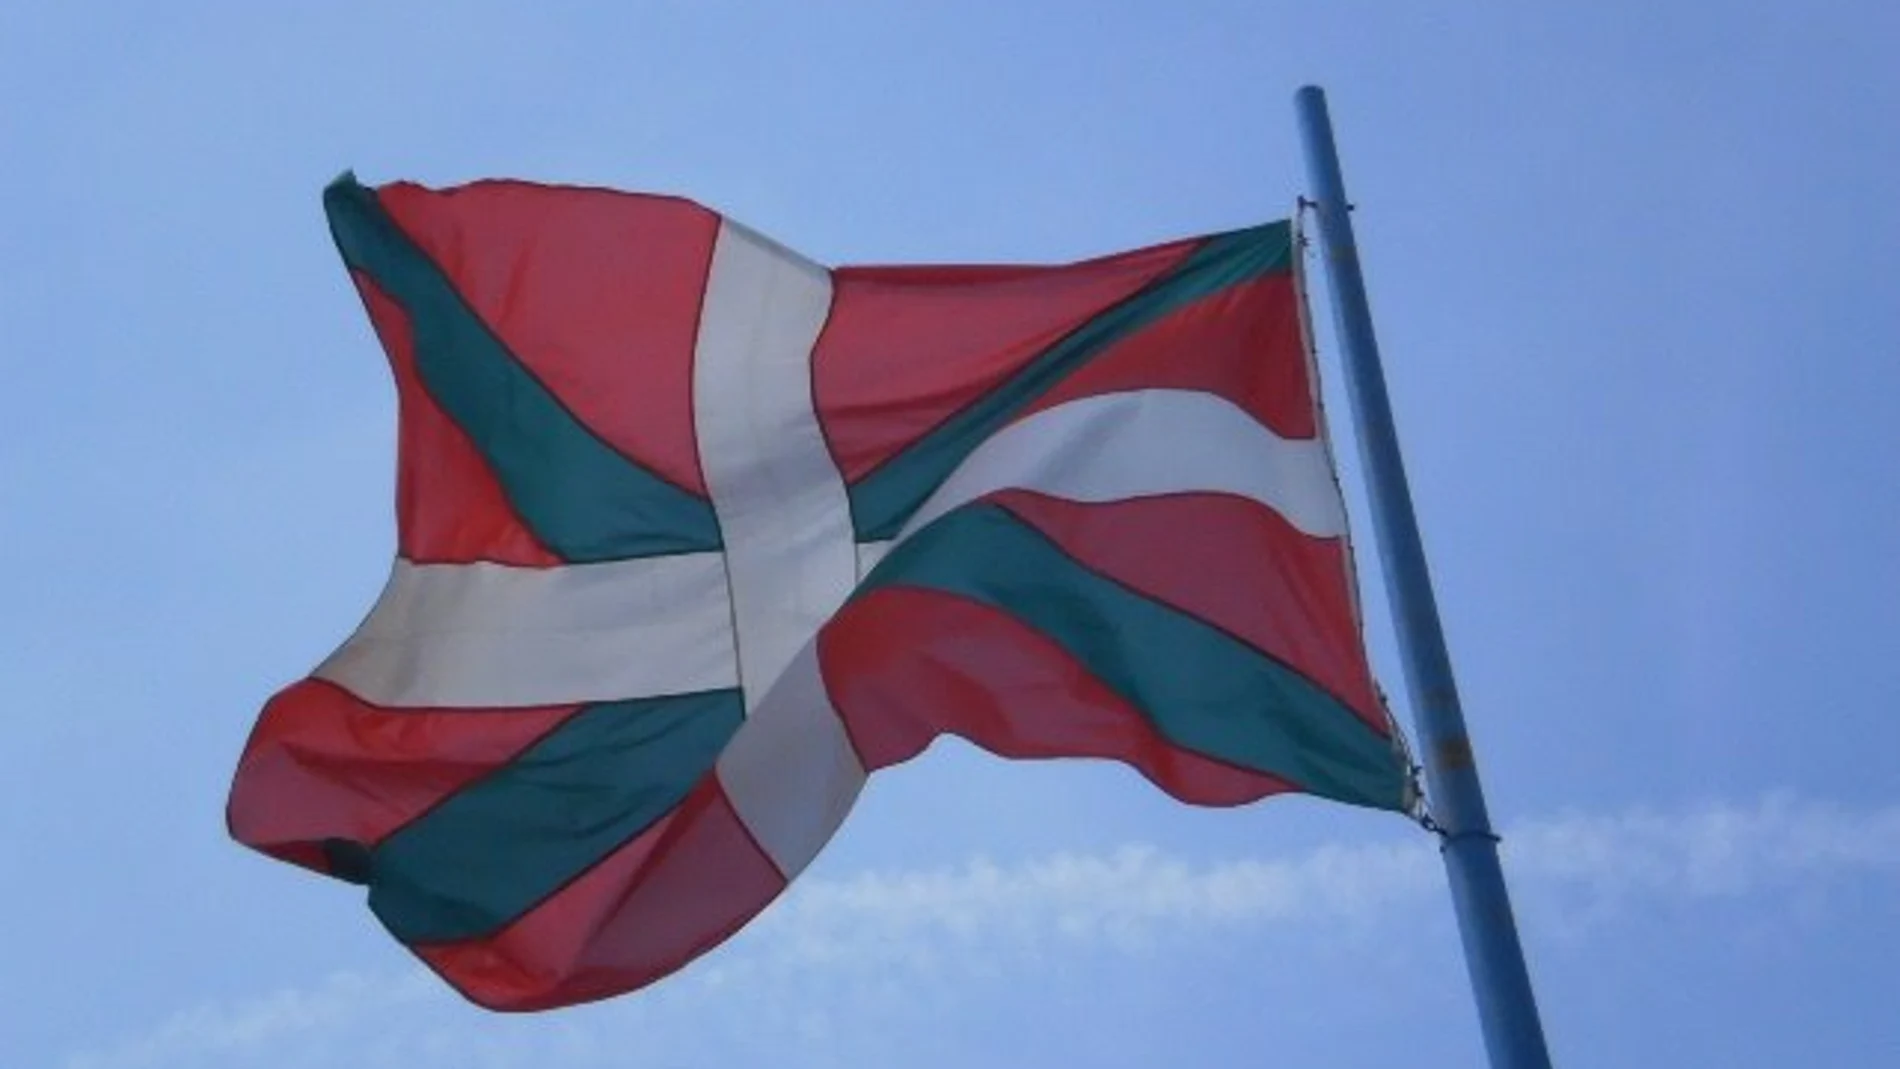 La ikurriña, bandera de Euskadi, ondeando